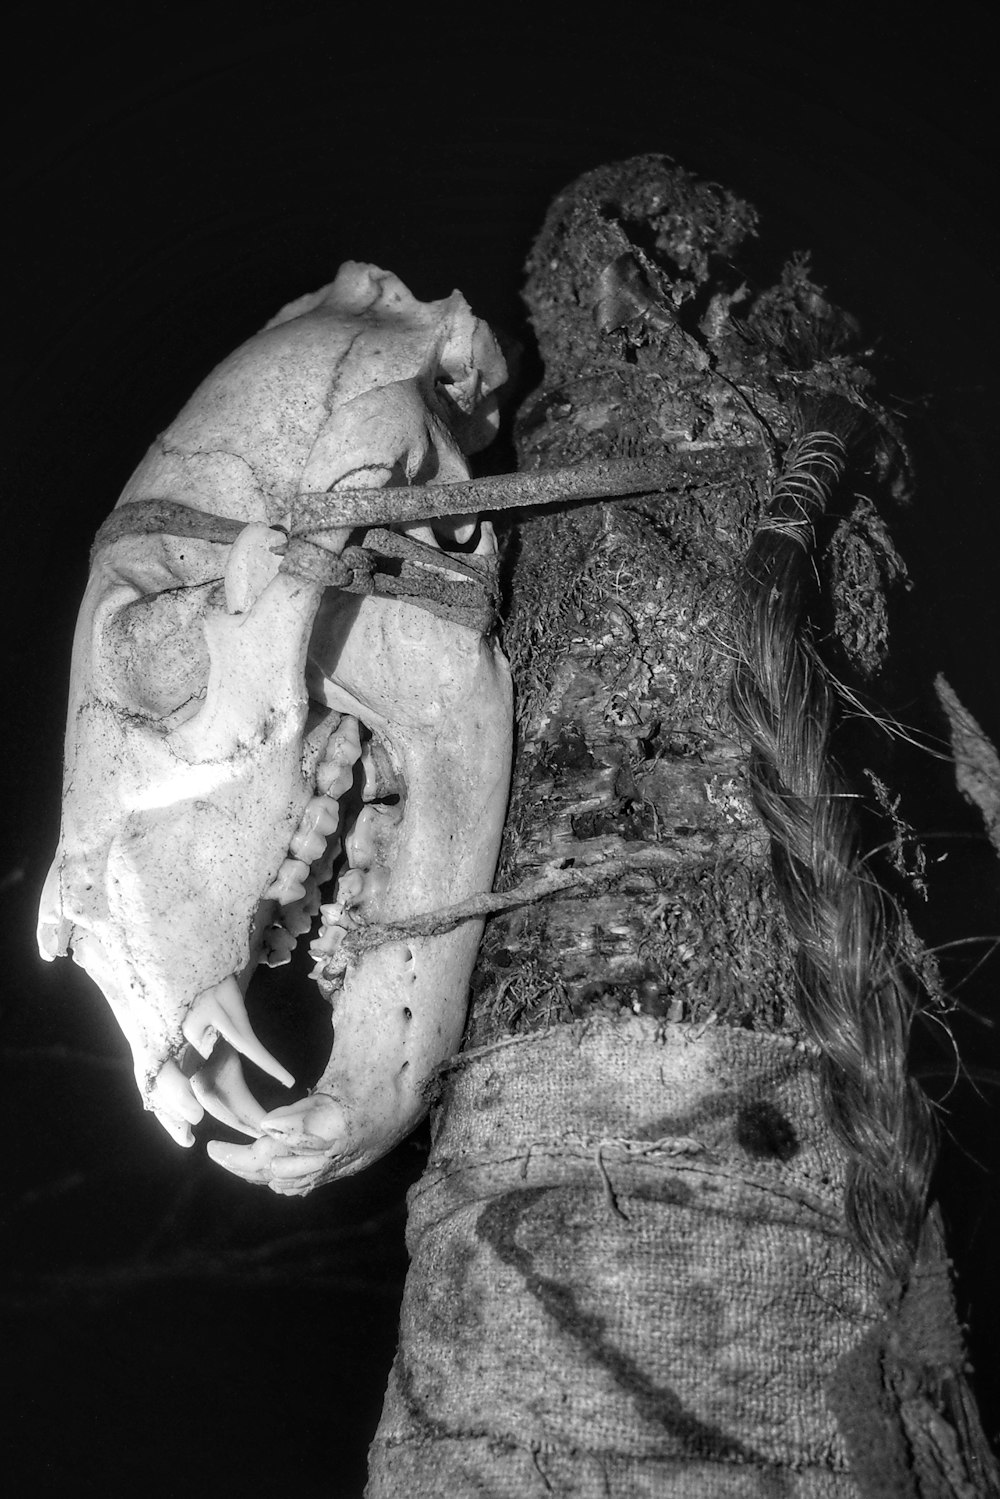 foto in scala di grigi del cranio umano